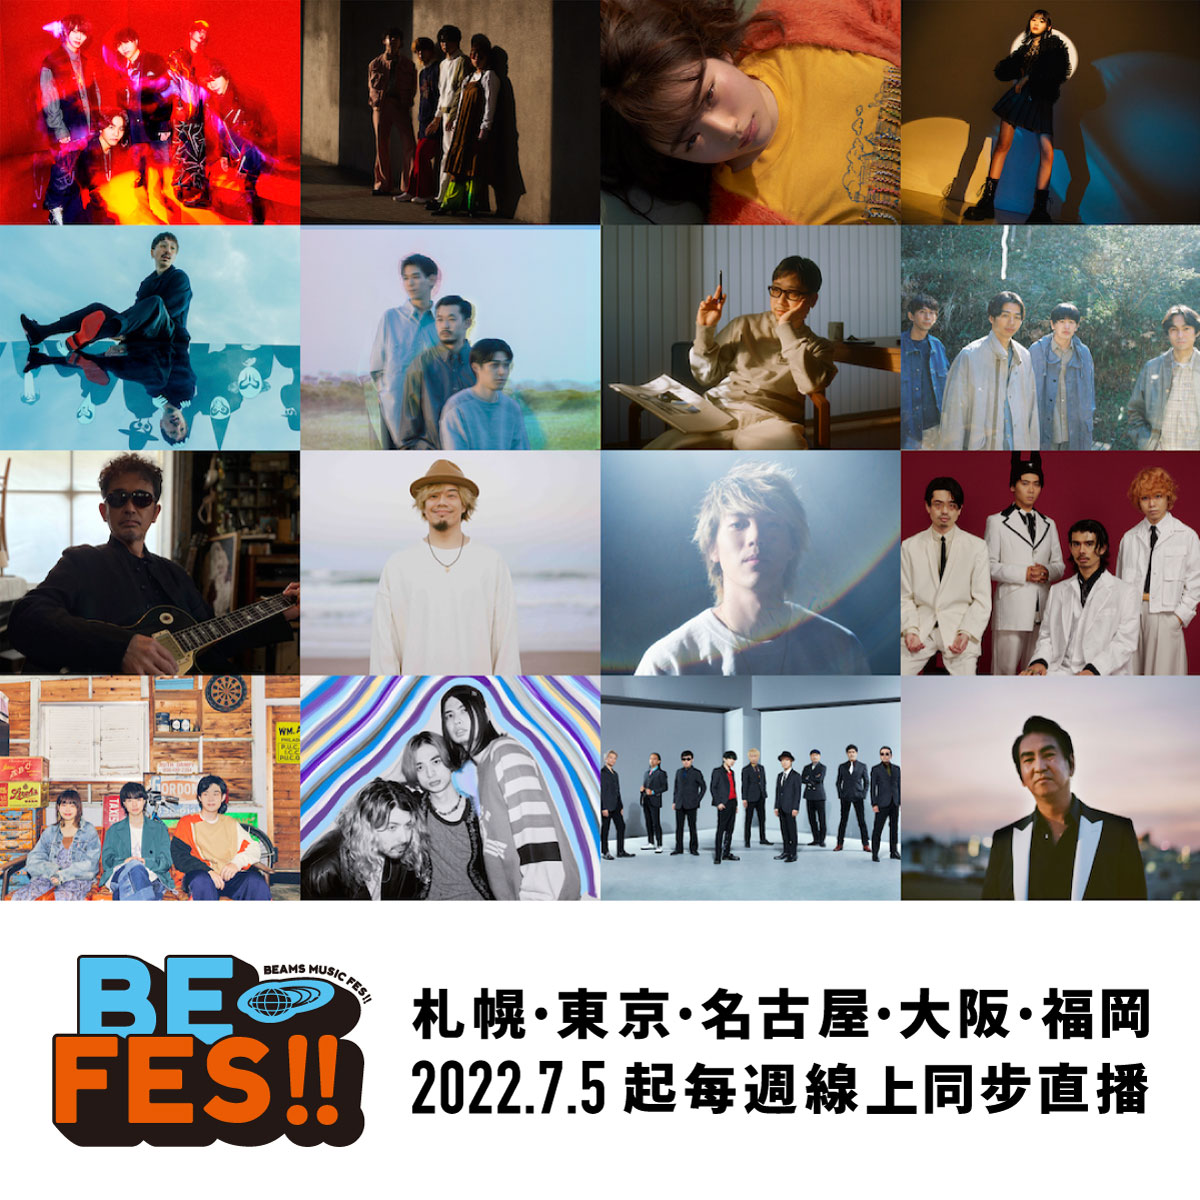 BEAMS首度舉辦的音樂盛典 MUSIC FESTIVAL 2022『BE FES!!』情報解禁！